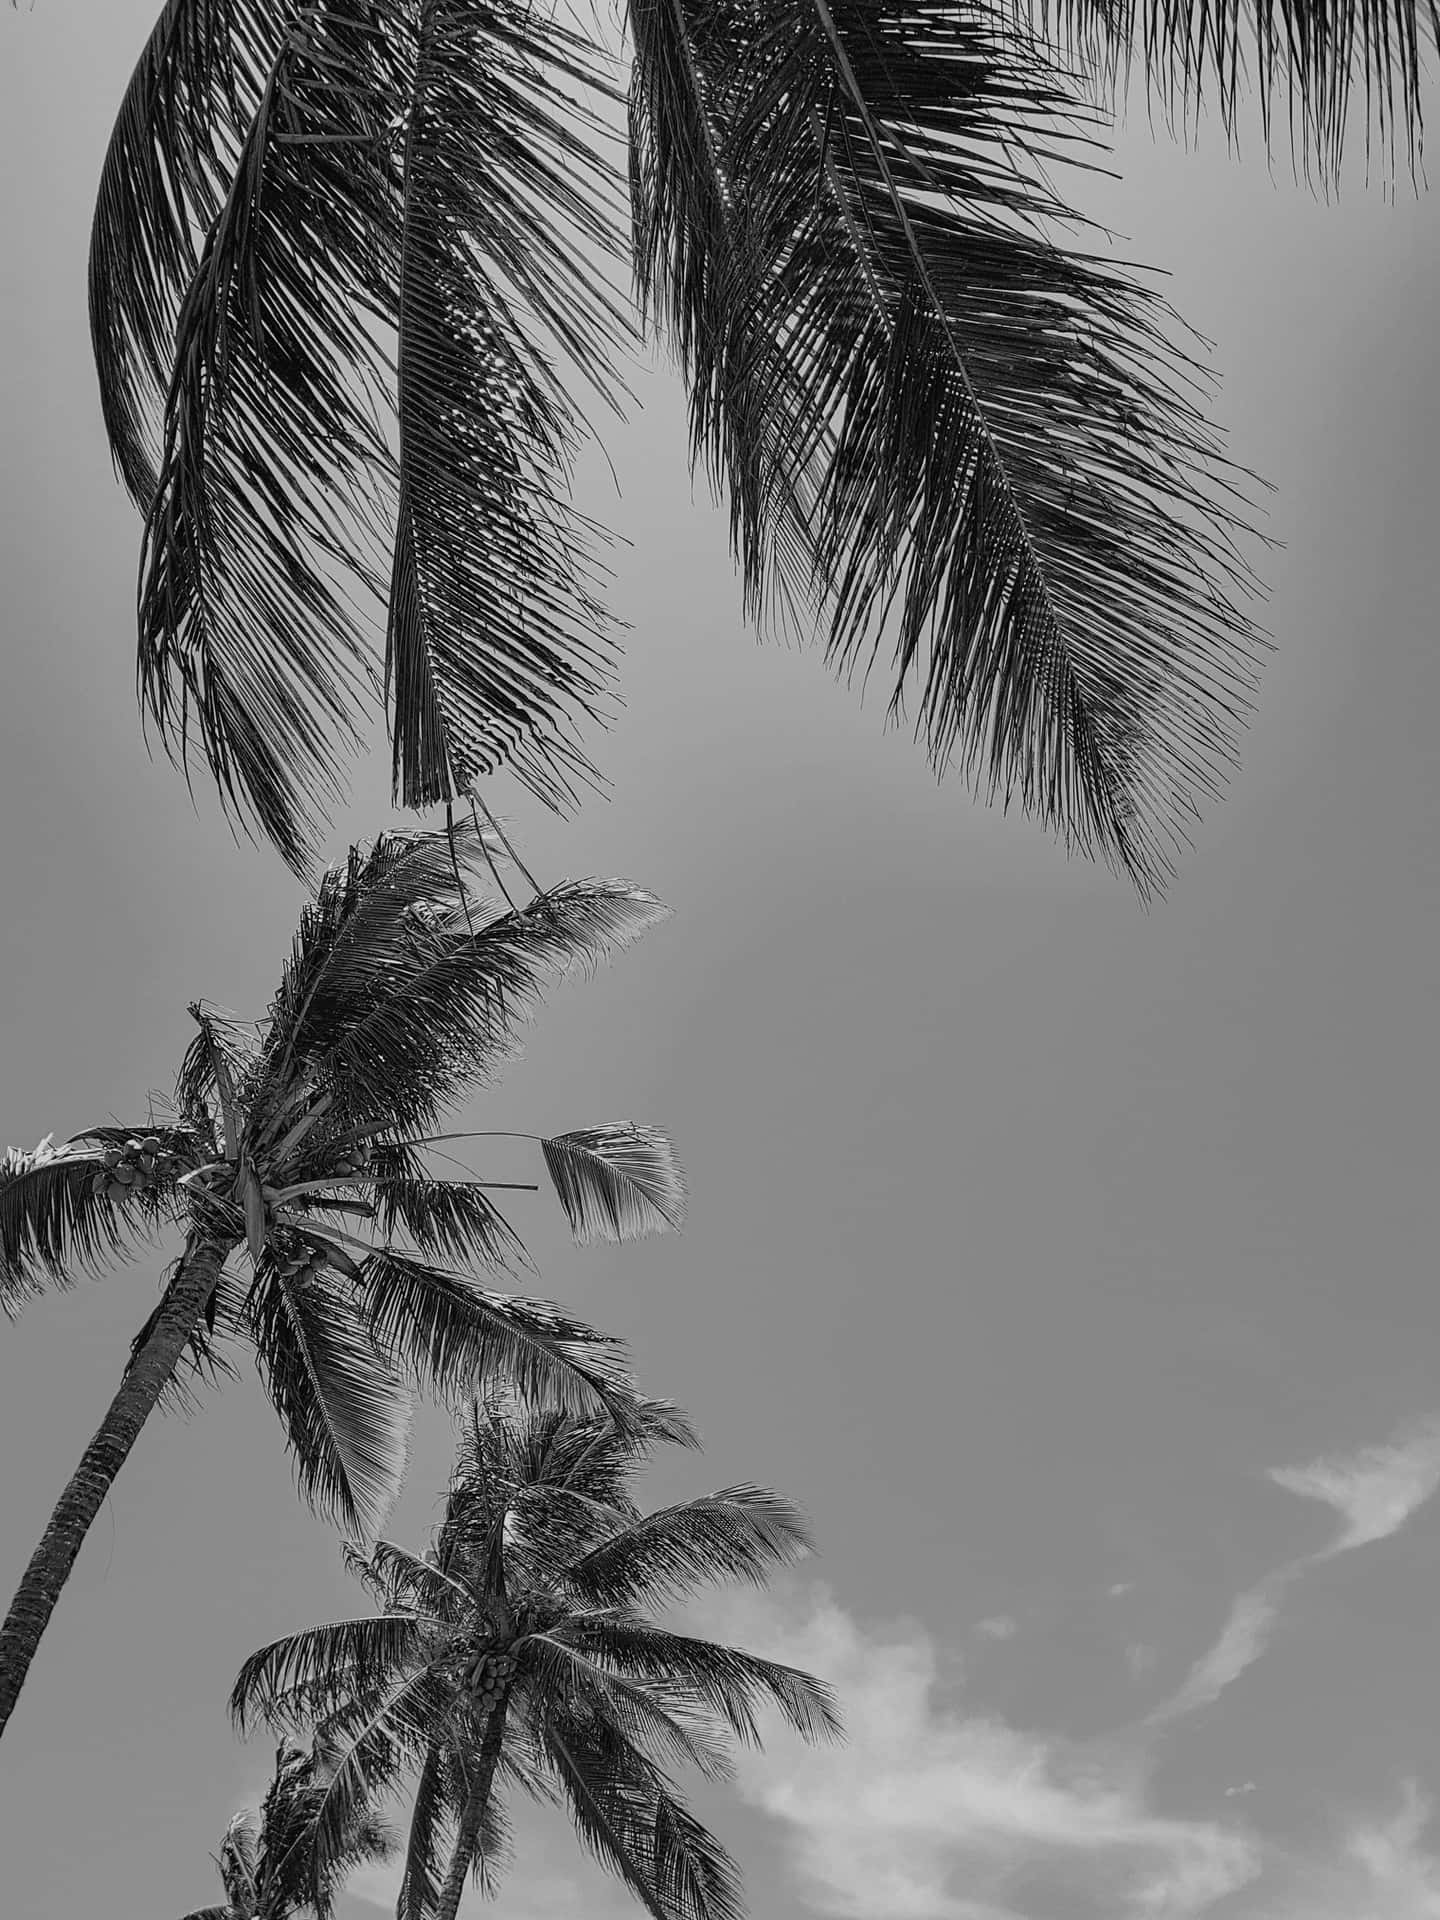 En sort og hvid palme står på en øde strand. Wallpaper